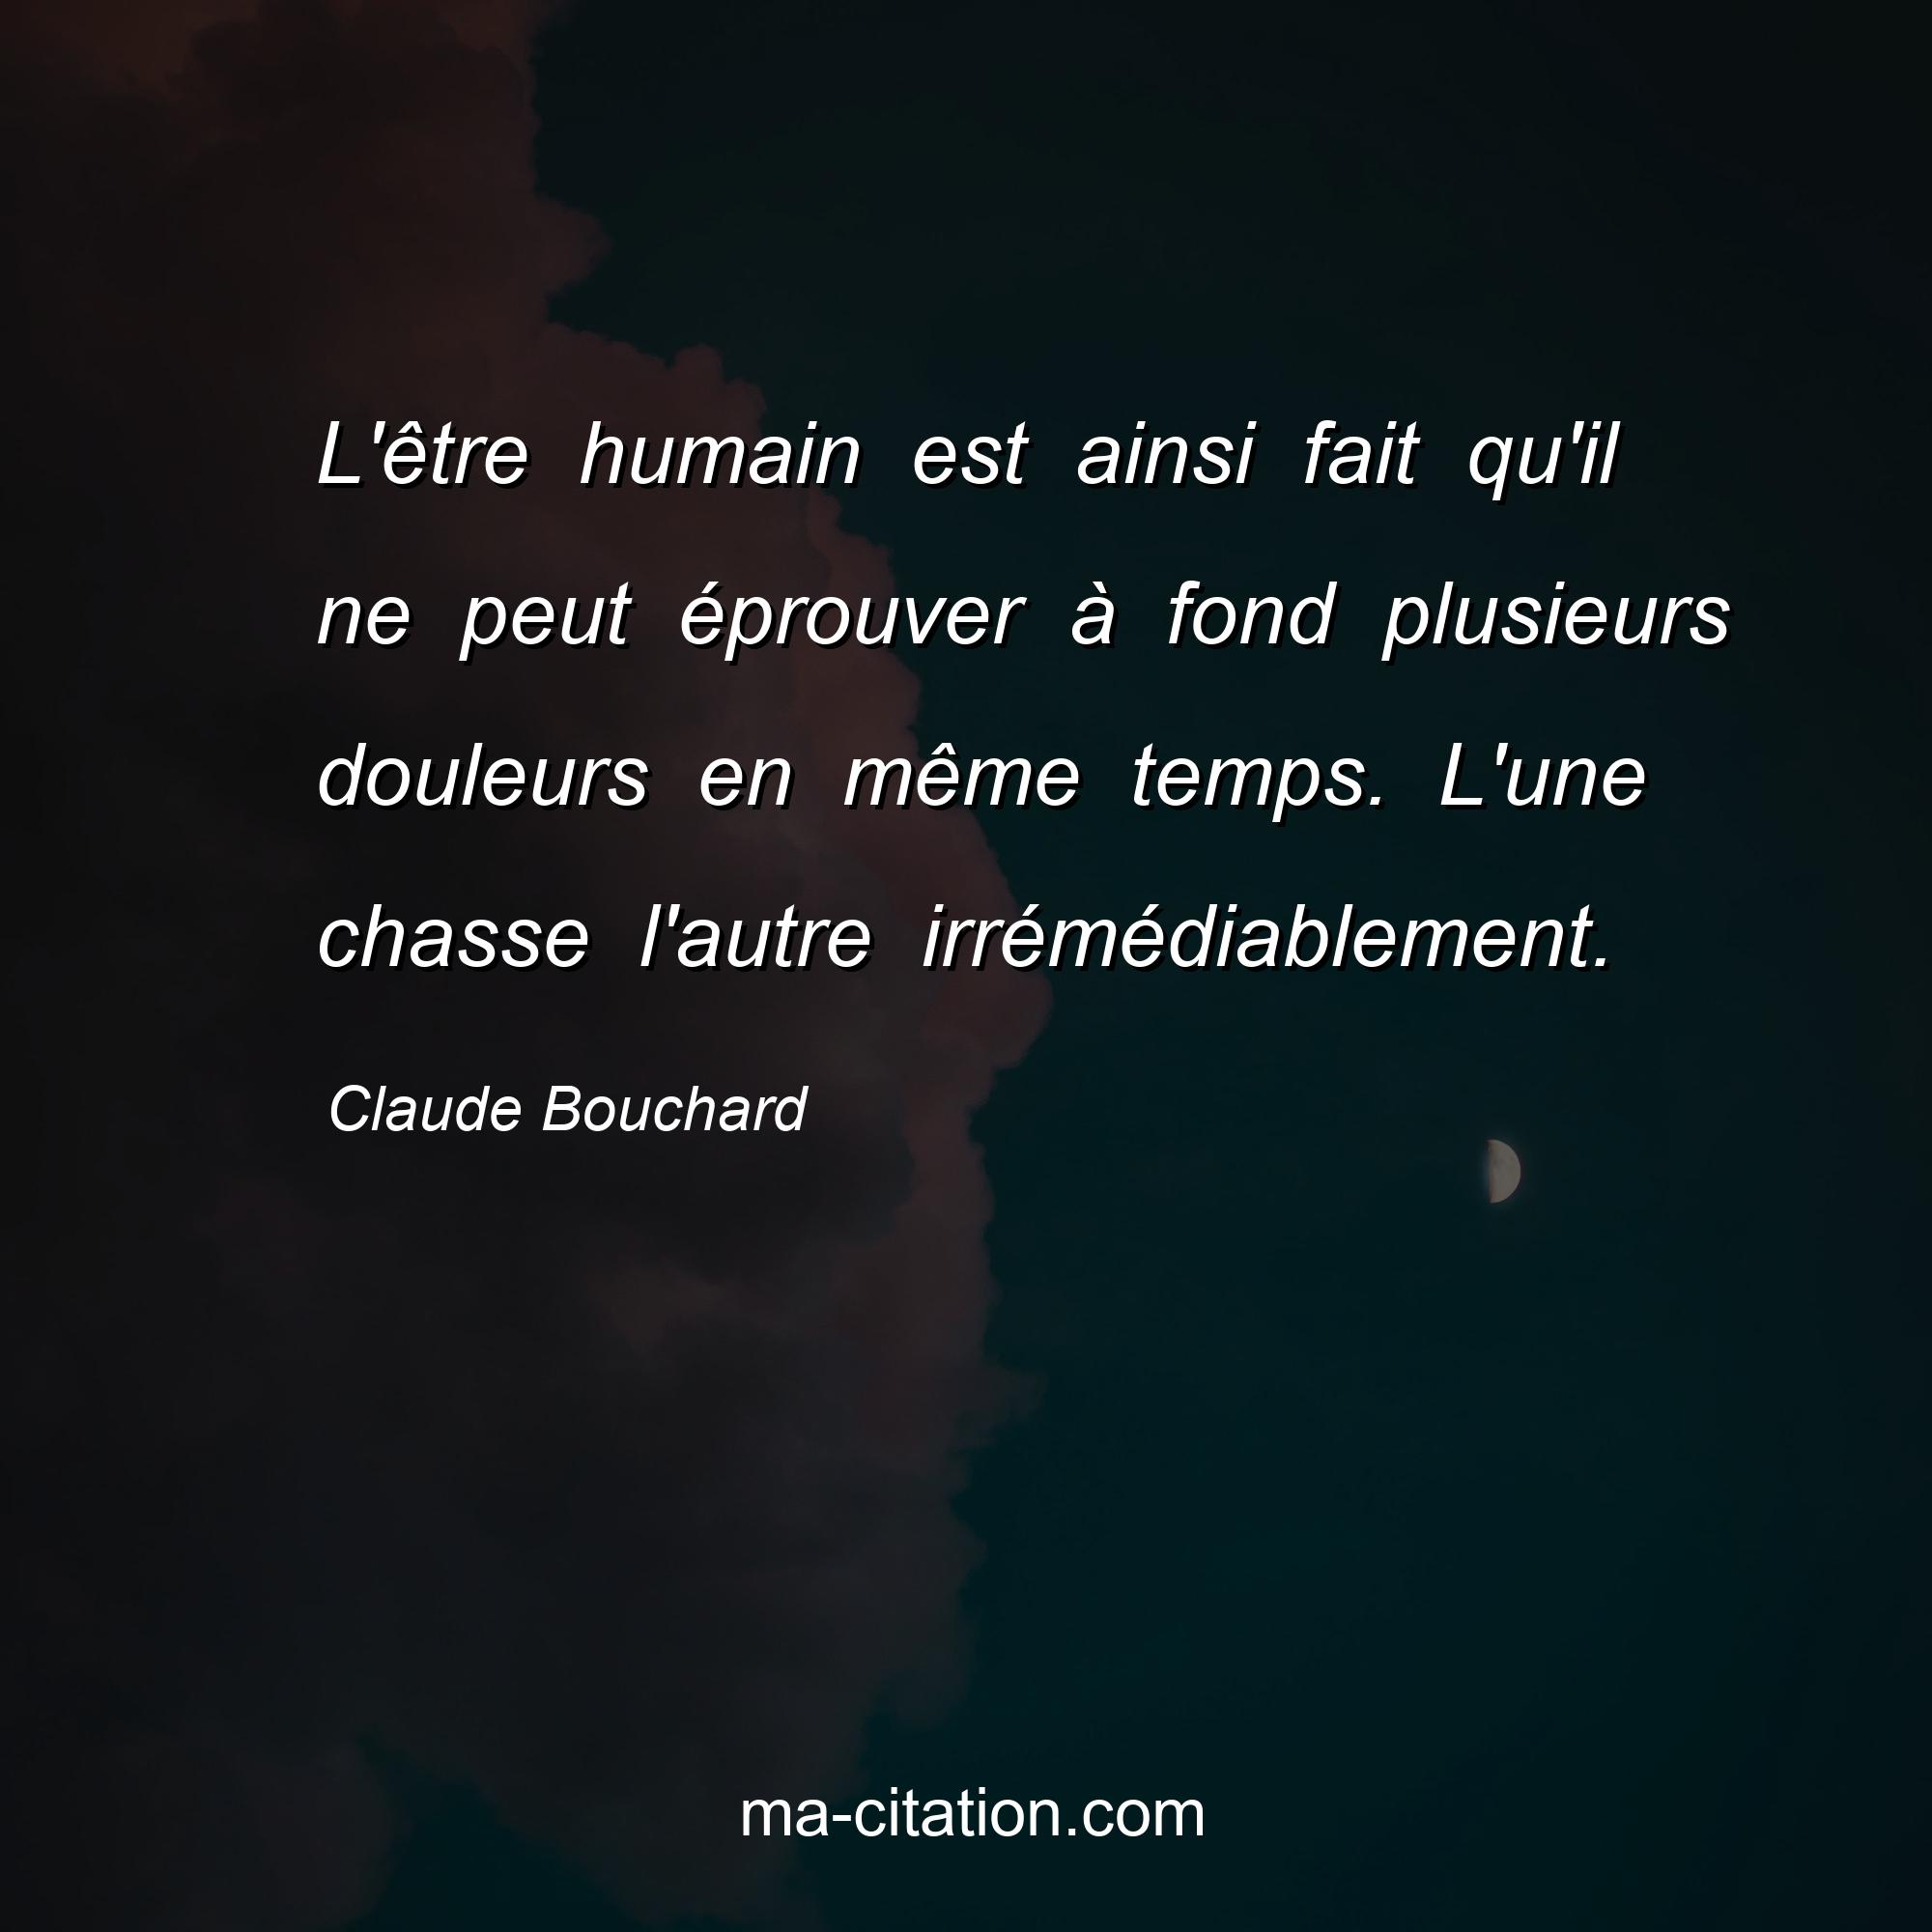 Claude Bouchard : L'être humain est ainsi fait qu'il ne peut éprouver à fond plusieurs douleurs en même temps. L'une chasse l'autre irrémédiablement.